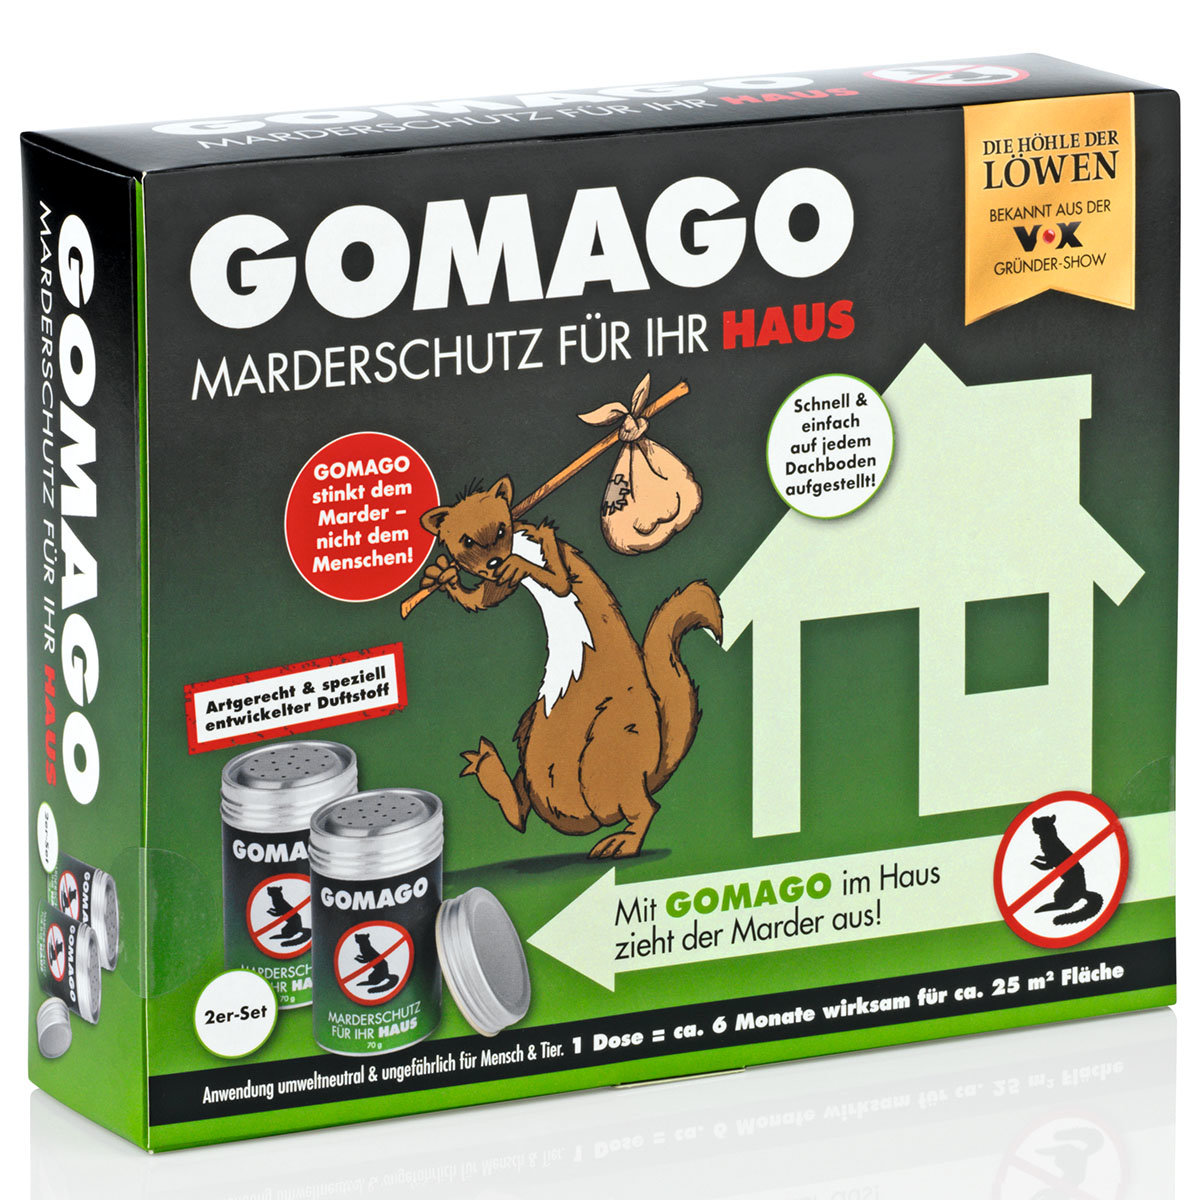 Marderschutz Gomago für Ihr Haus, 2er-Set, 140 g
| #5